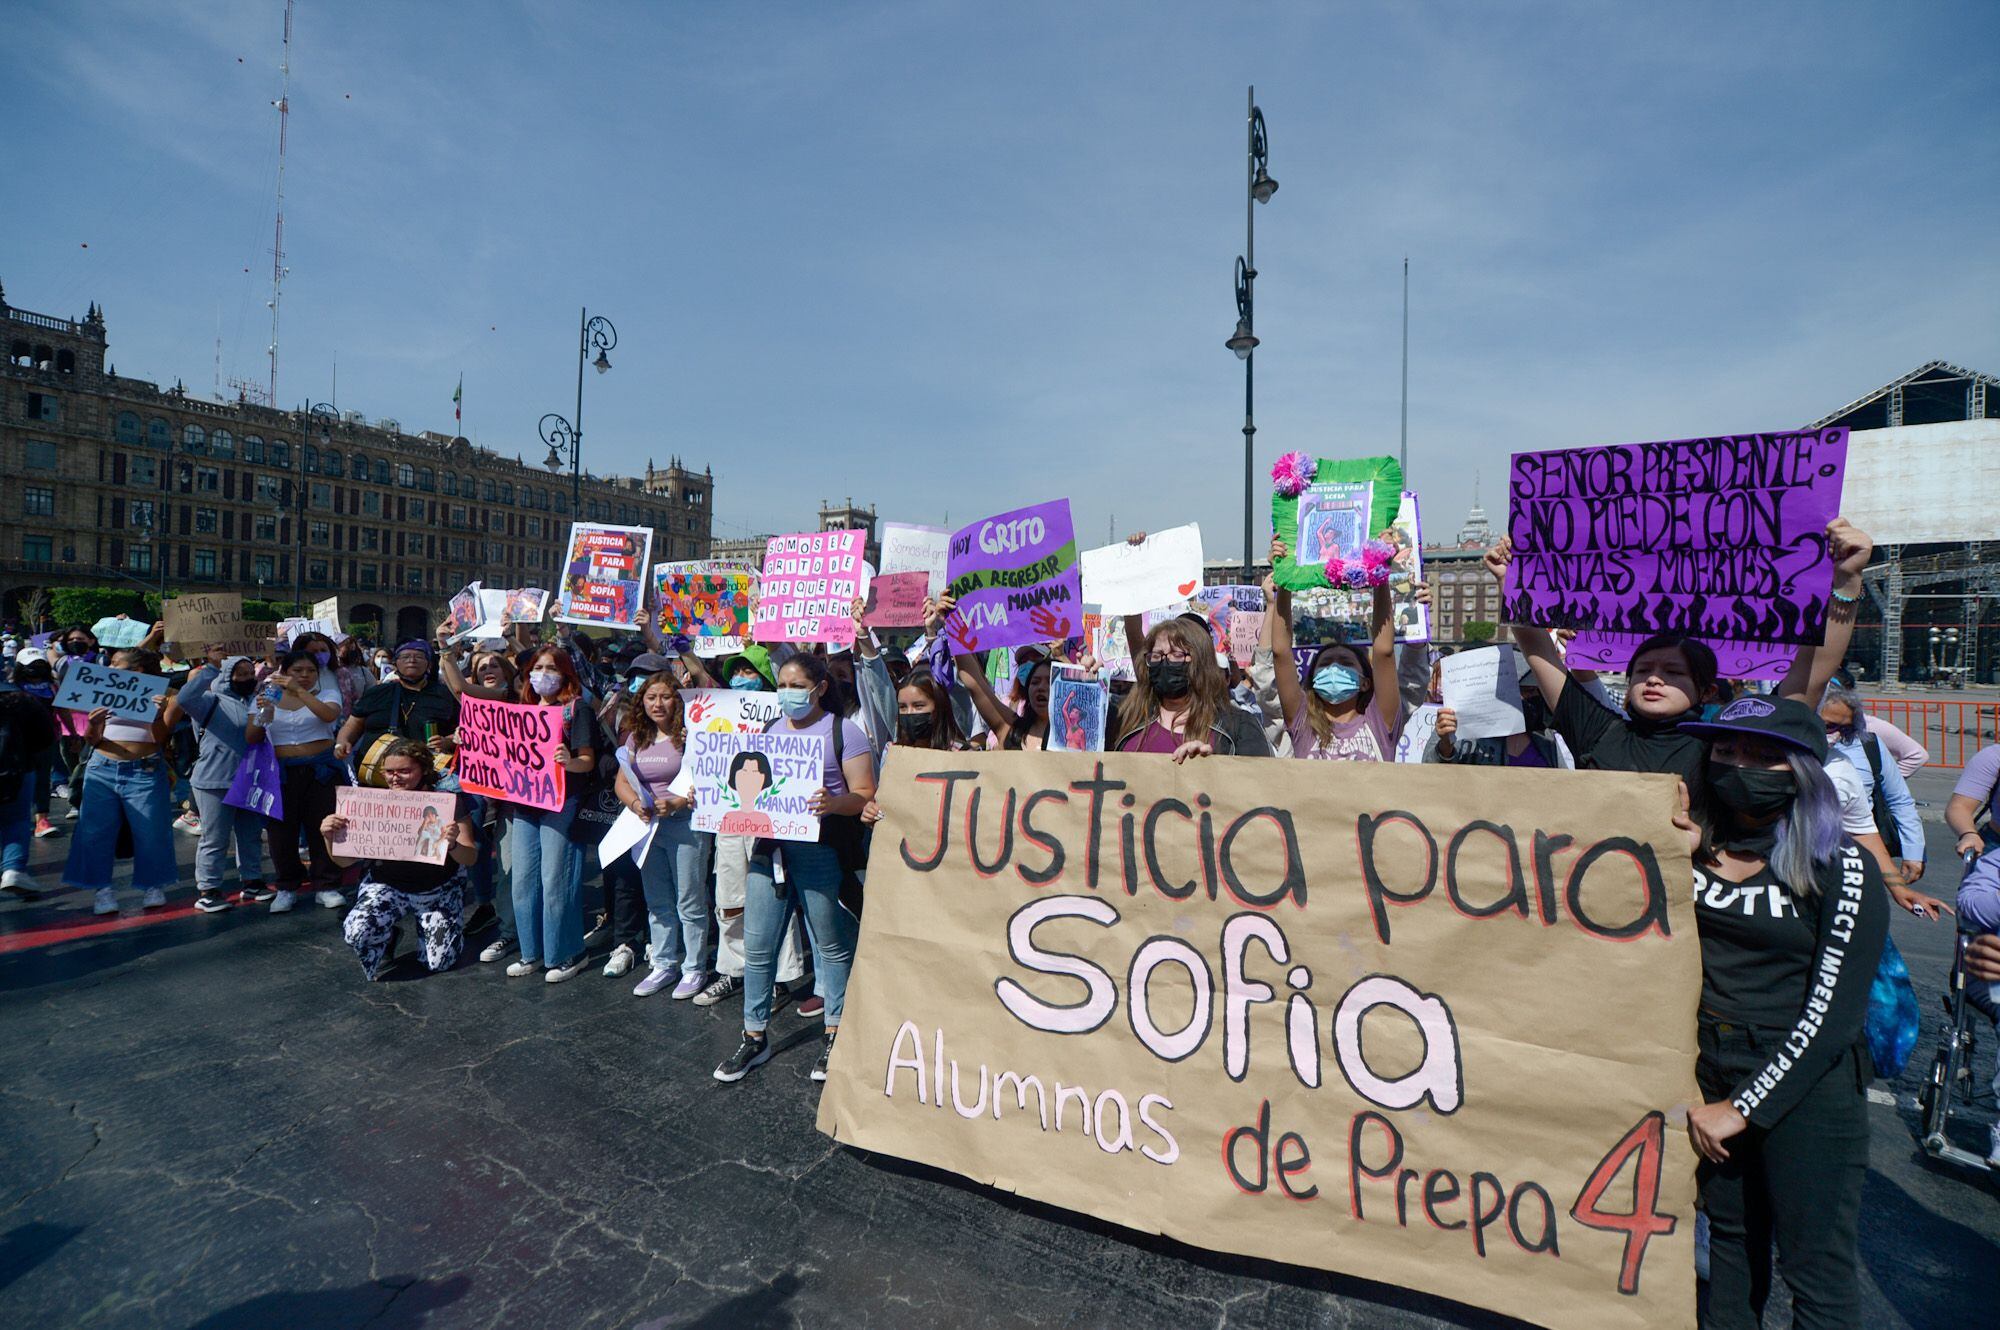 Marchan al Zócalo de CDMX para exigir justicia por la muerte de Sofía Morales, alumna de Prepa 4